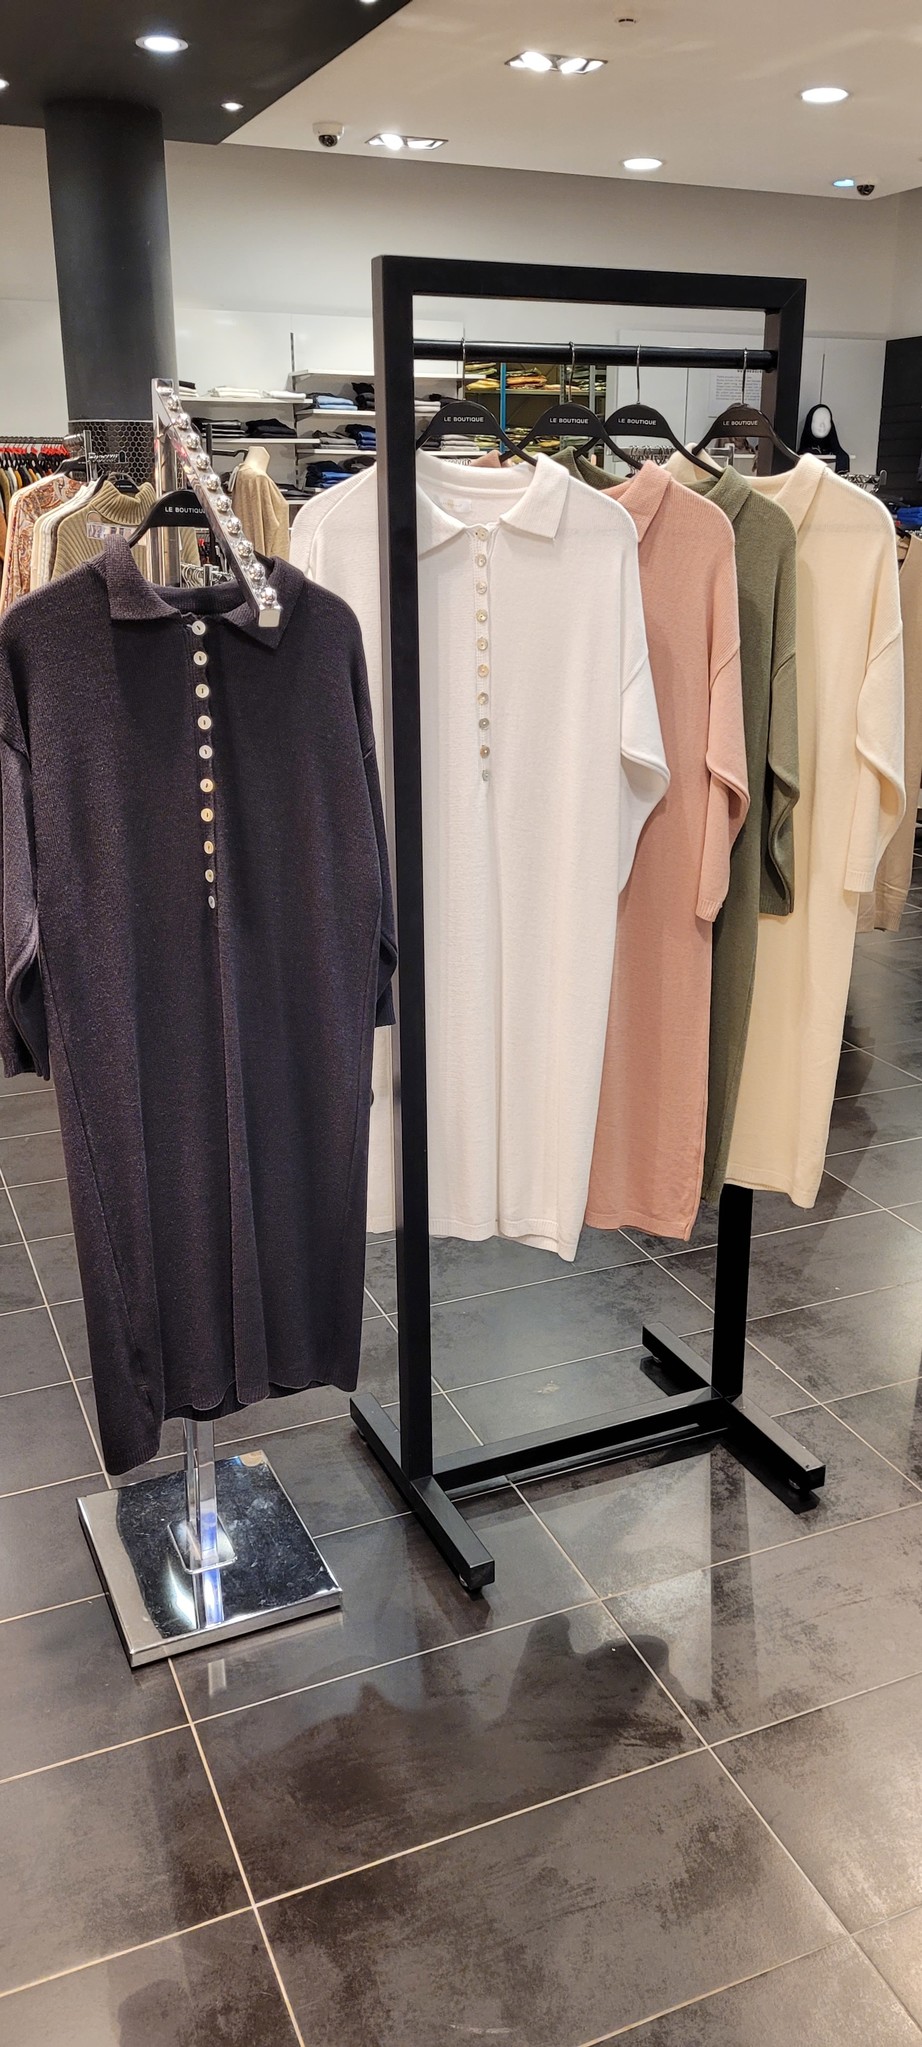 Lange trui met knoopjes (zwart-wit-roze-mintgroen-beige)